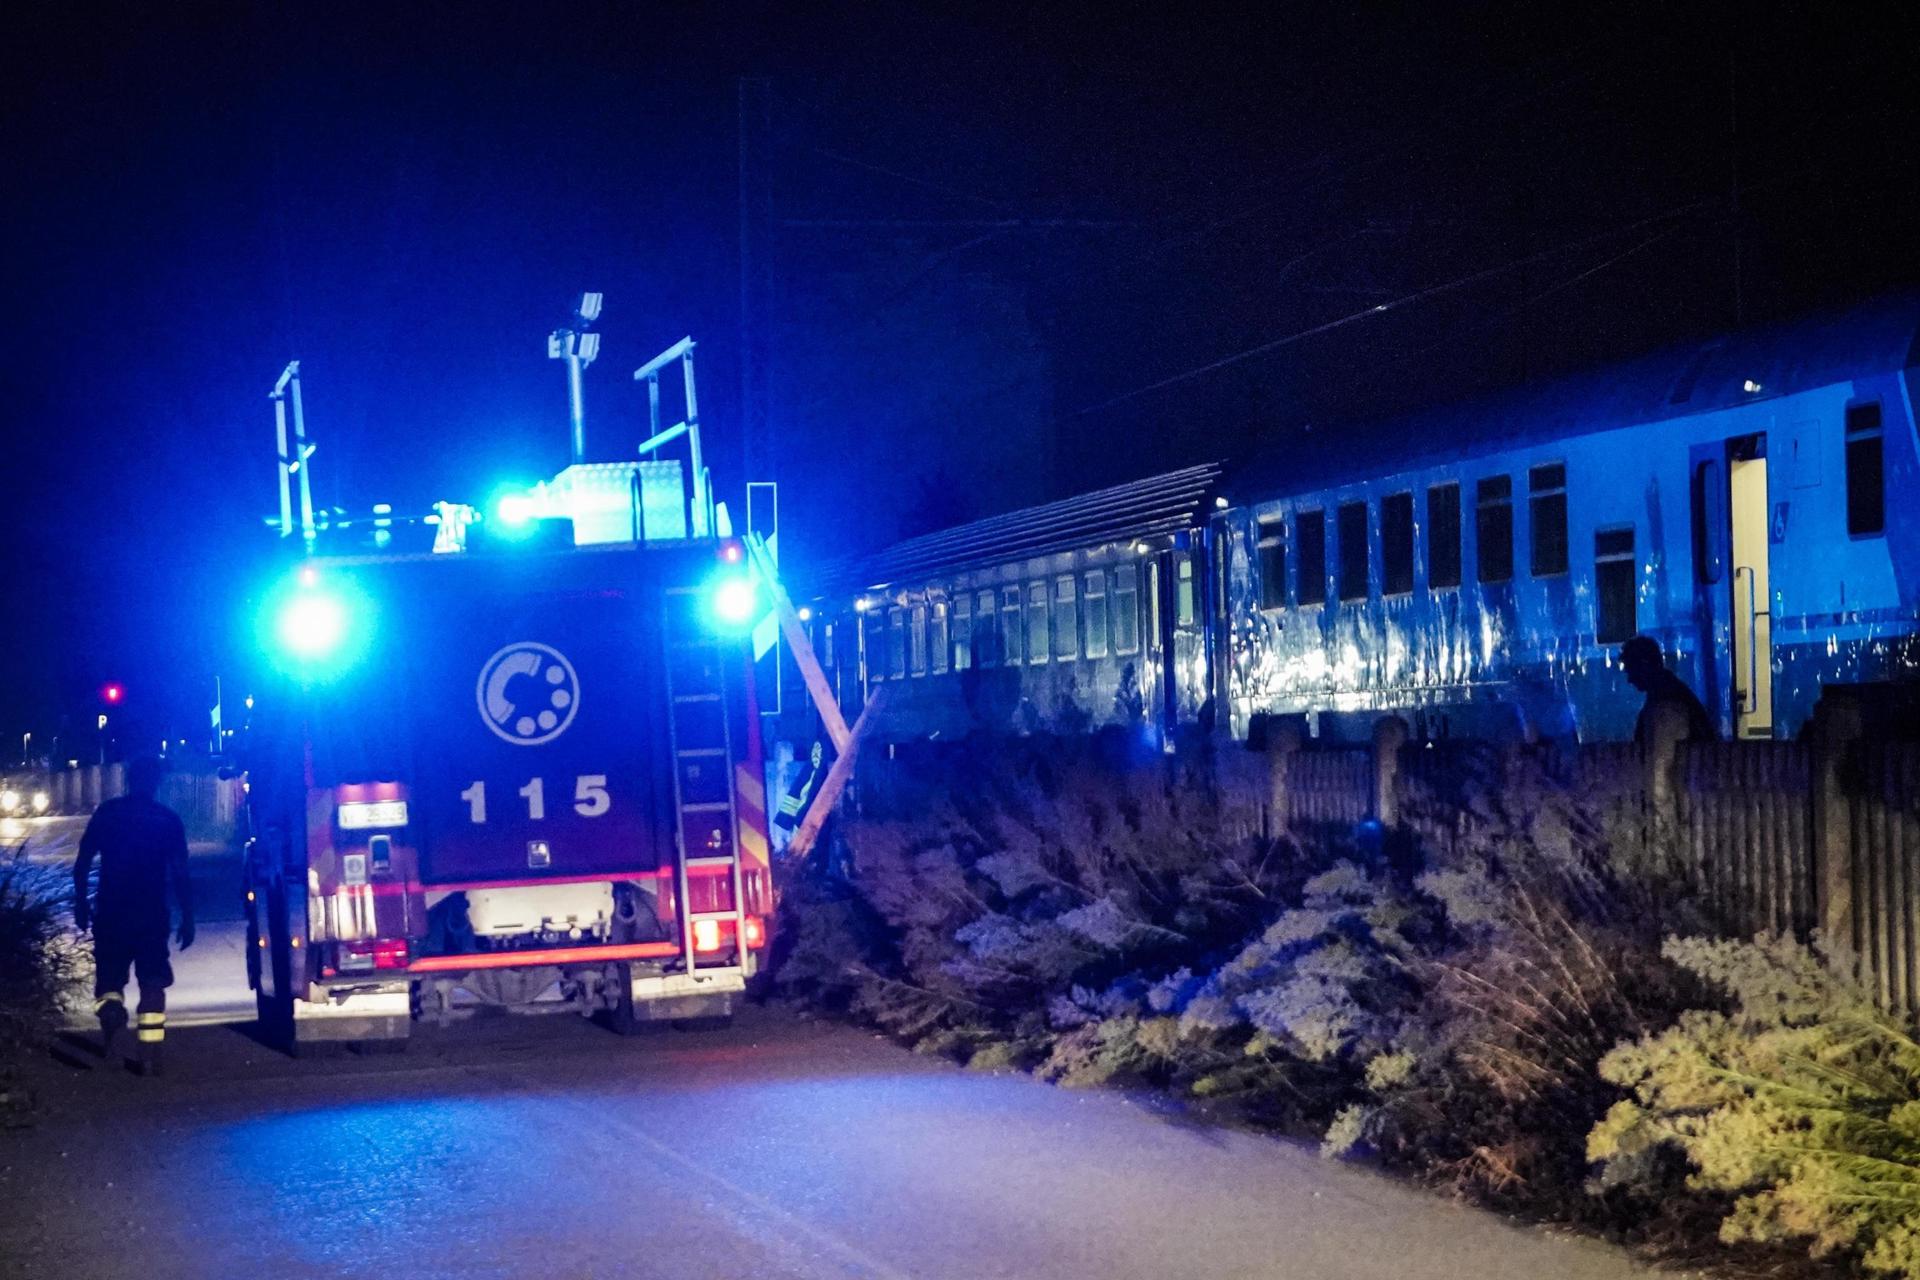 Un “error humano” causó la muerte de los cinco trabajadores ferroviarios arrollados en Italia